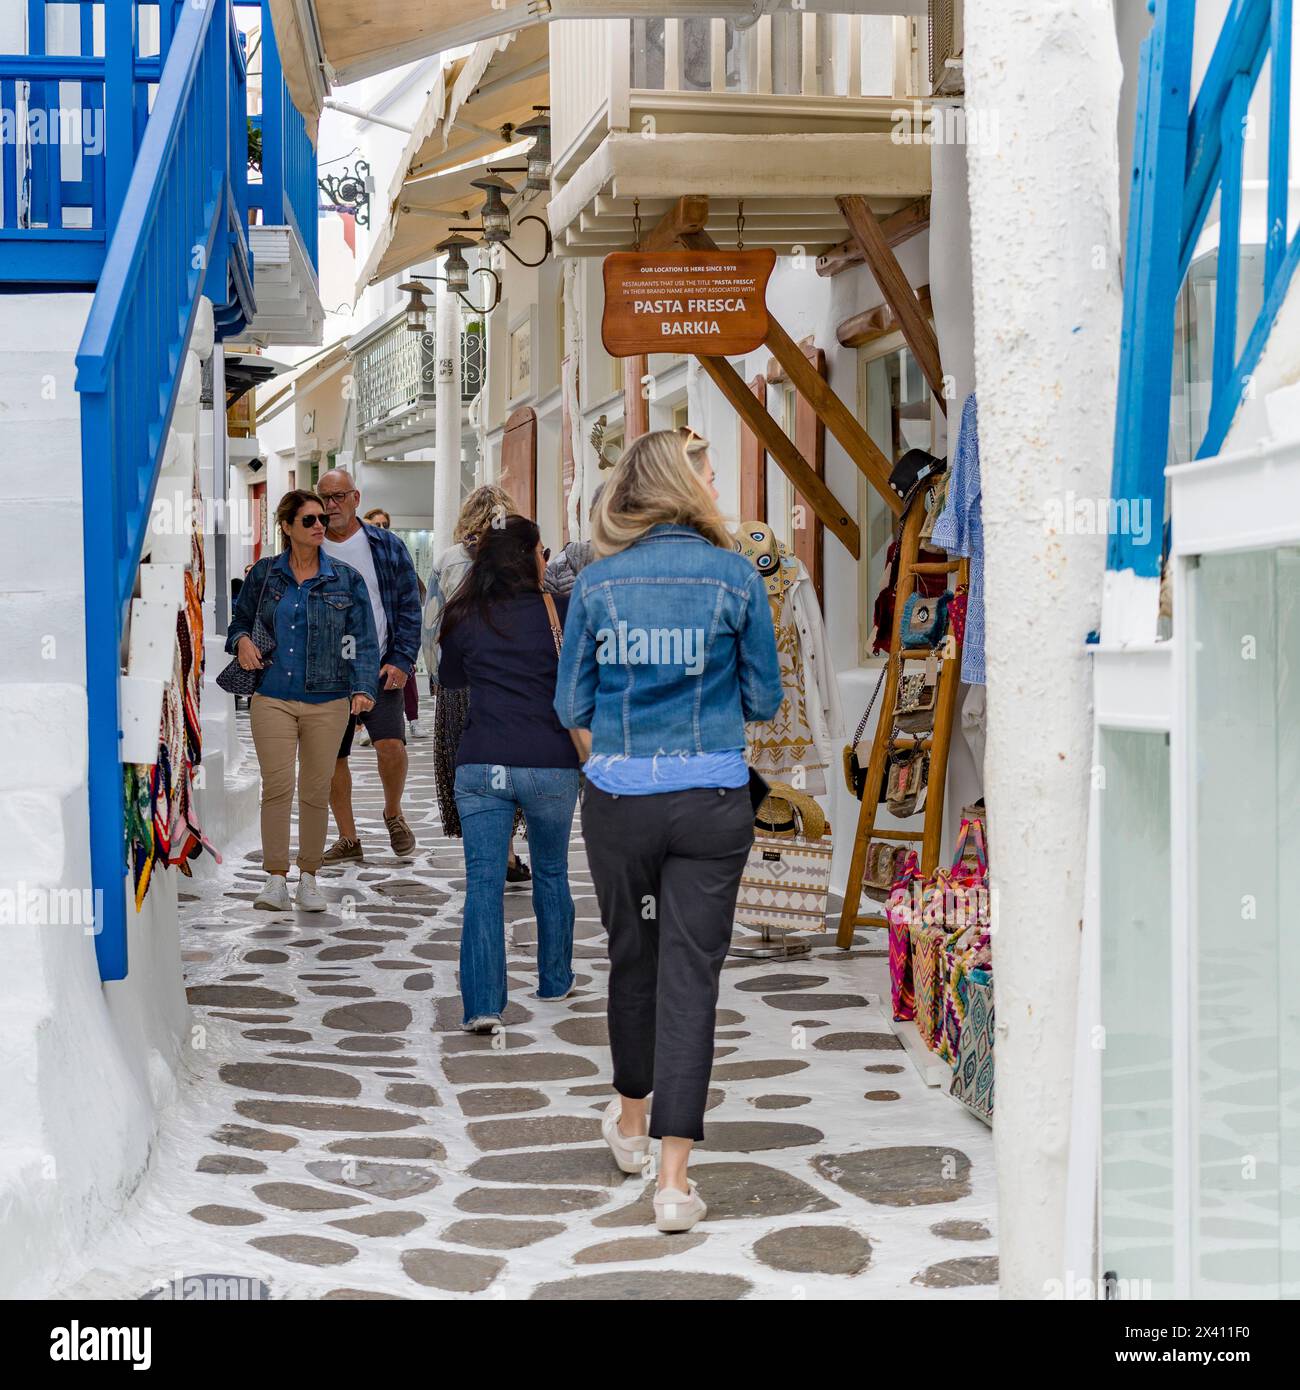 Typische Straßenszene auf der Insel Mykonos, mit Menschen, die auf einem schmalen Fußweg vorbei an Geschäften und Souvenirs schlendern; Mykonos, Griechenland Stockfoto